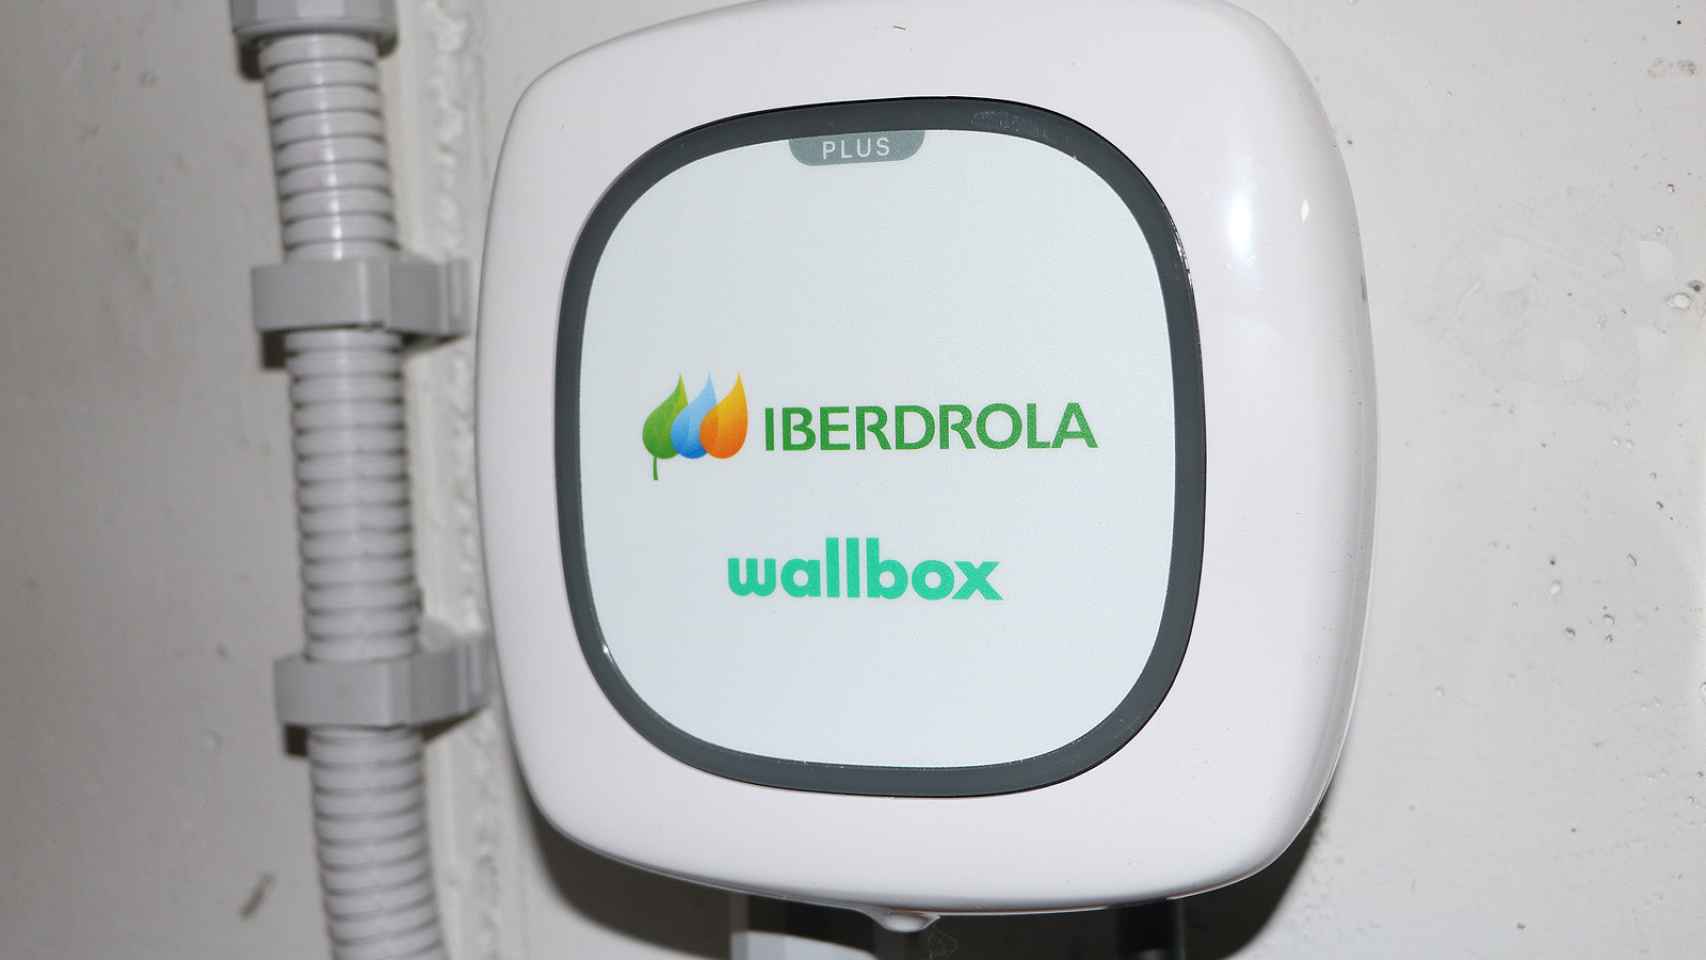 Punto de carga de Iberdrola fabricado por Wallbox.